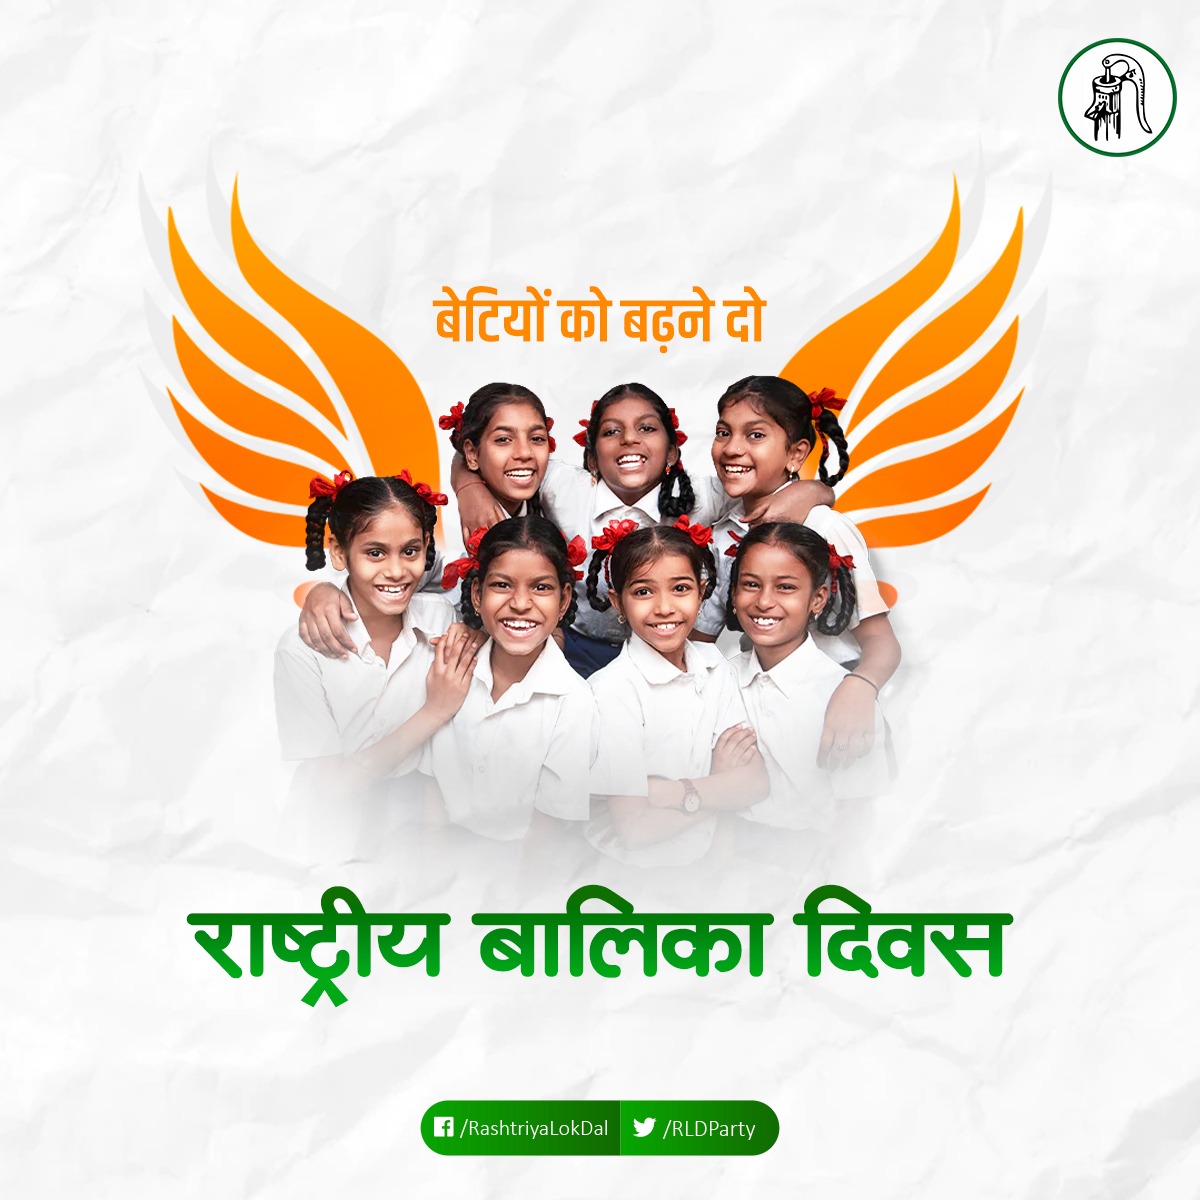 राष्ट्रीय बालिका दिवस के अवसर पर हार्दिक बधाई एवं शुभकामनाएं #बालिका_दिवस